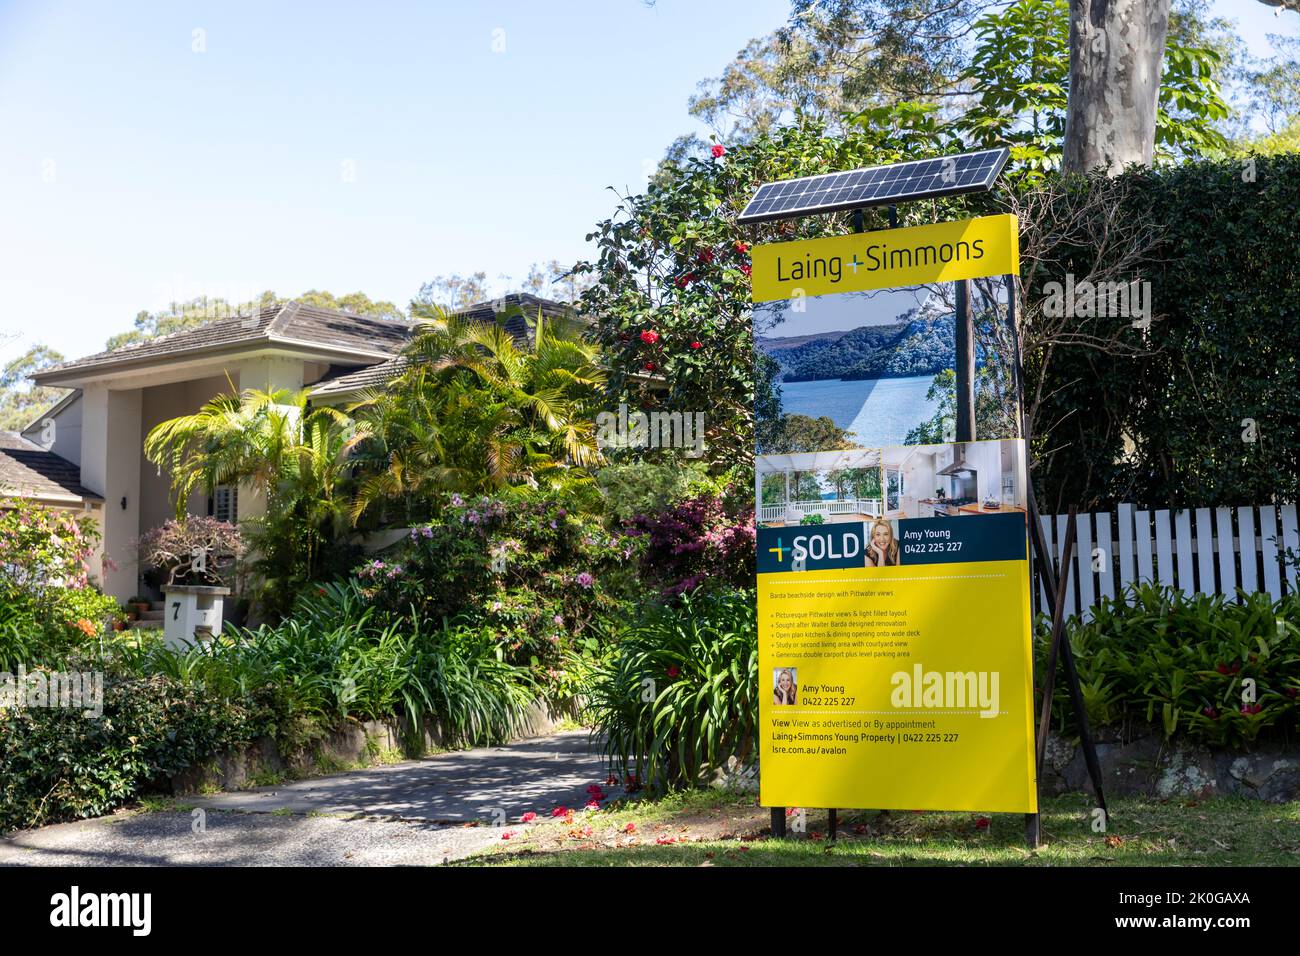 Australisches Haus verkauft, Haus in Avalon Beach mit Marketingtafel, auf der die Immobilie verkauft wird, Sydney, NSW, Australien Stockfoto